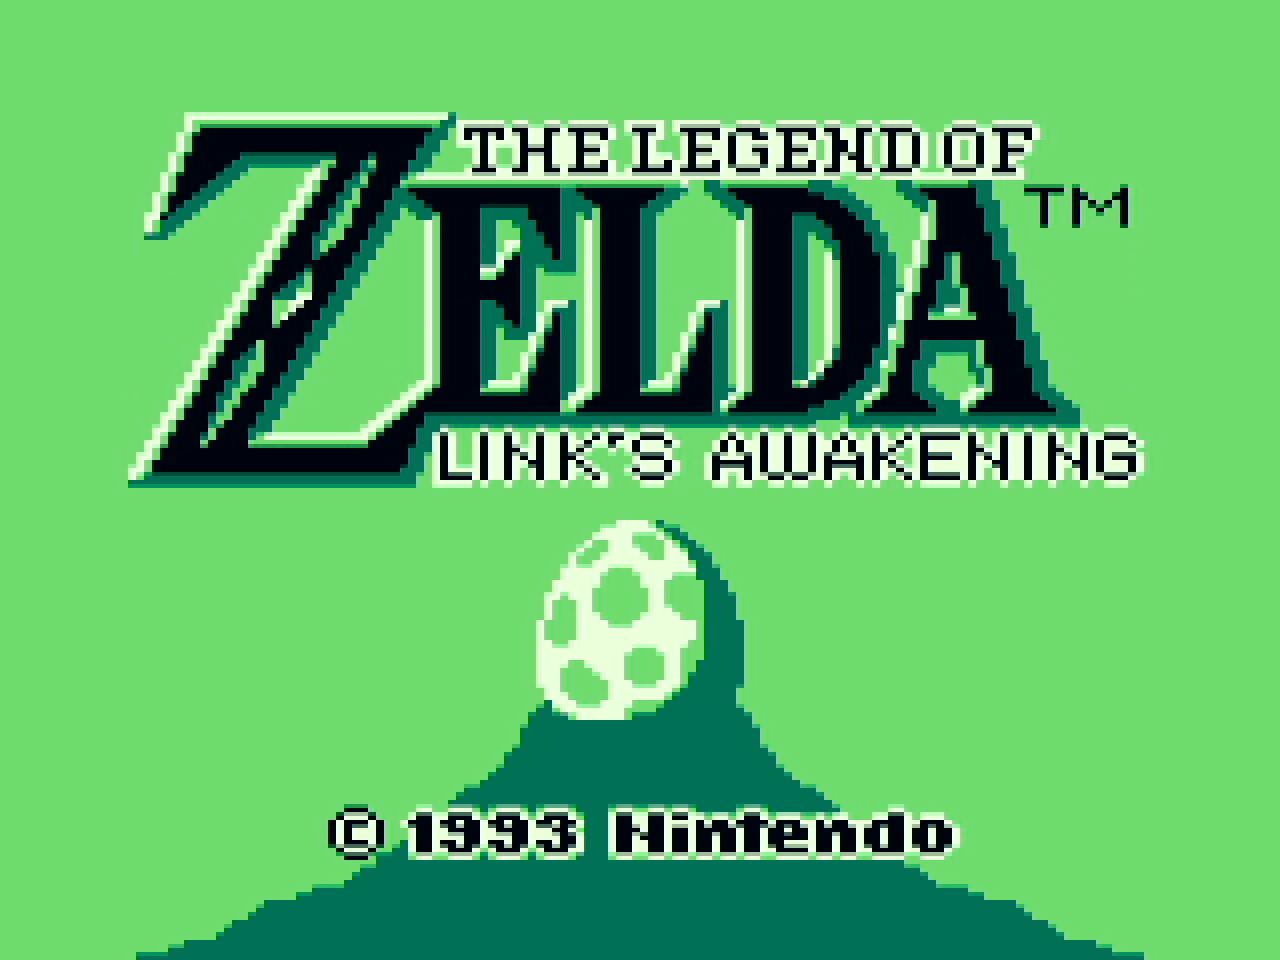 Nintendo Game & Watch: The Legend of Zelda HXBSMAAAB - Best Buy